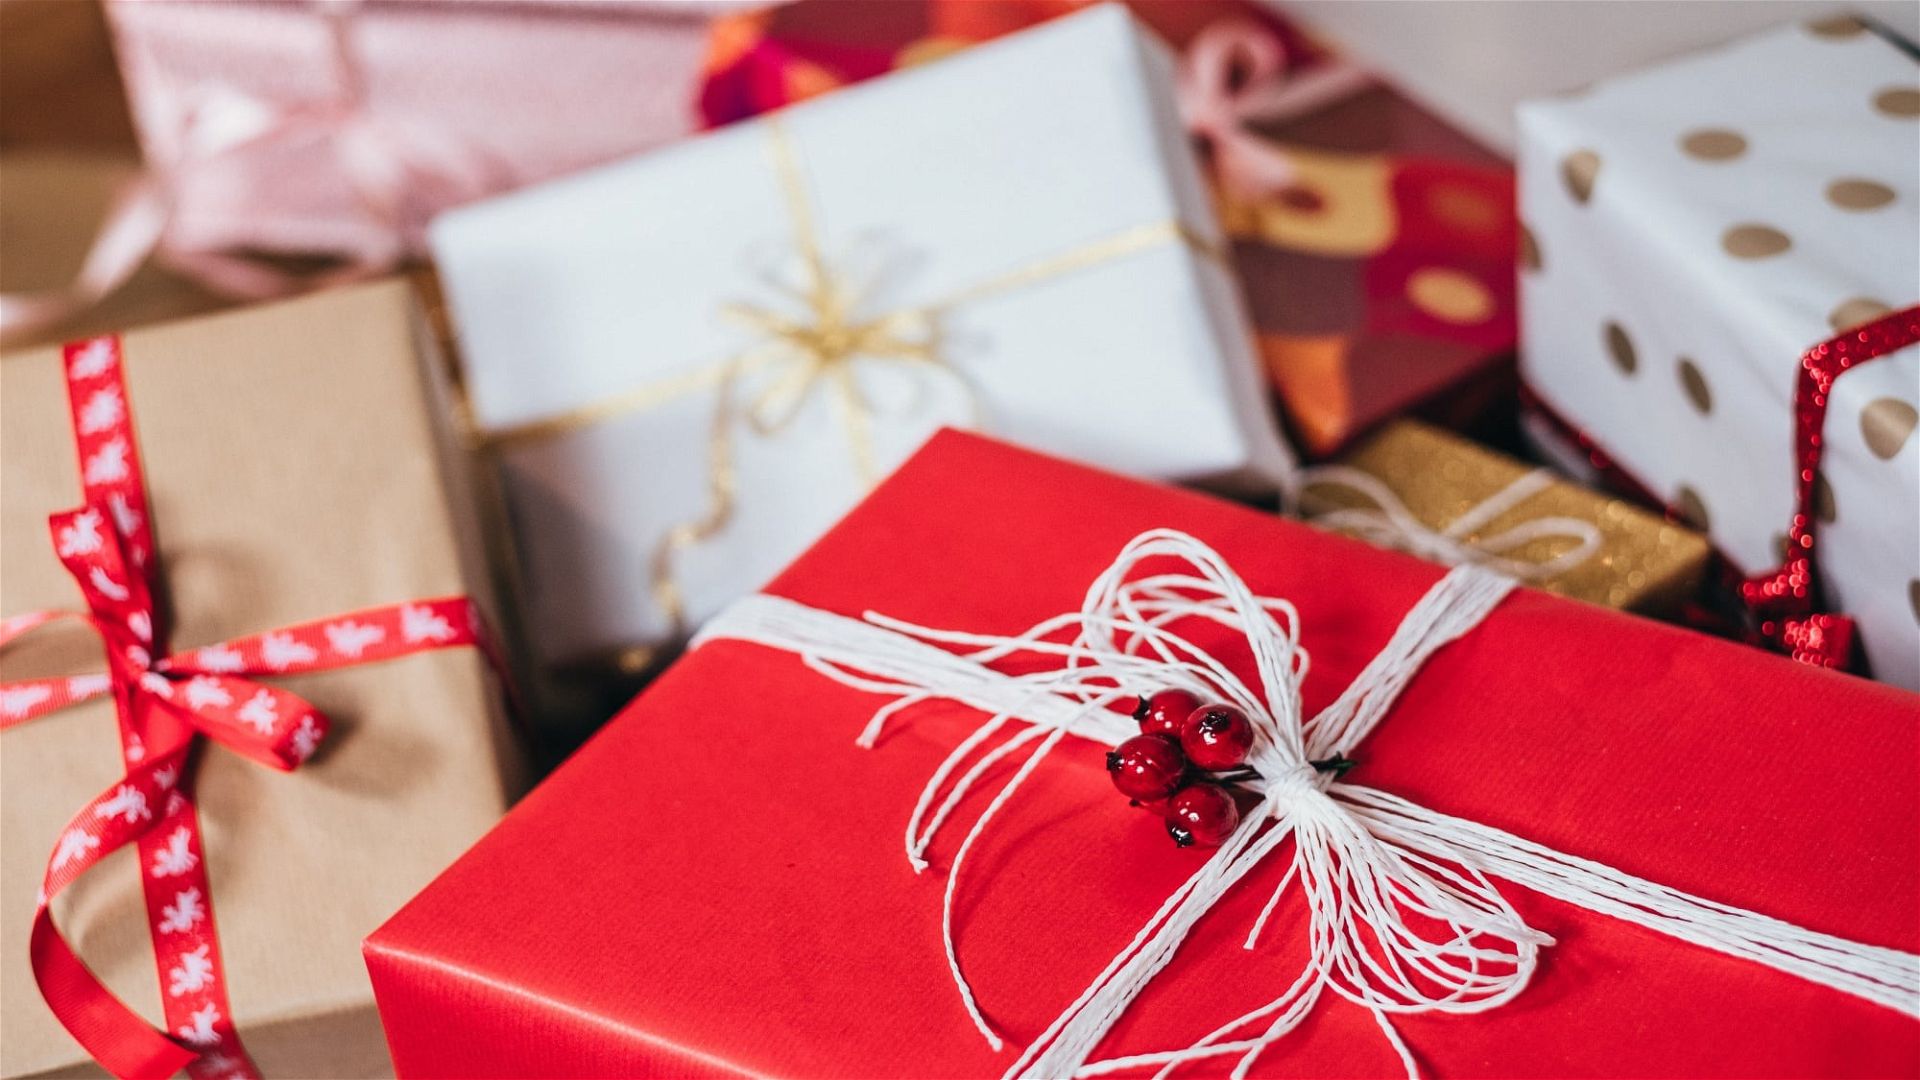 Günstige Schätze: Mehr Wiener kaufen Altwaren als Weihnachtsgeschenke - Wien